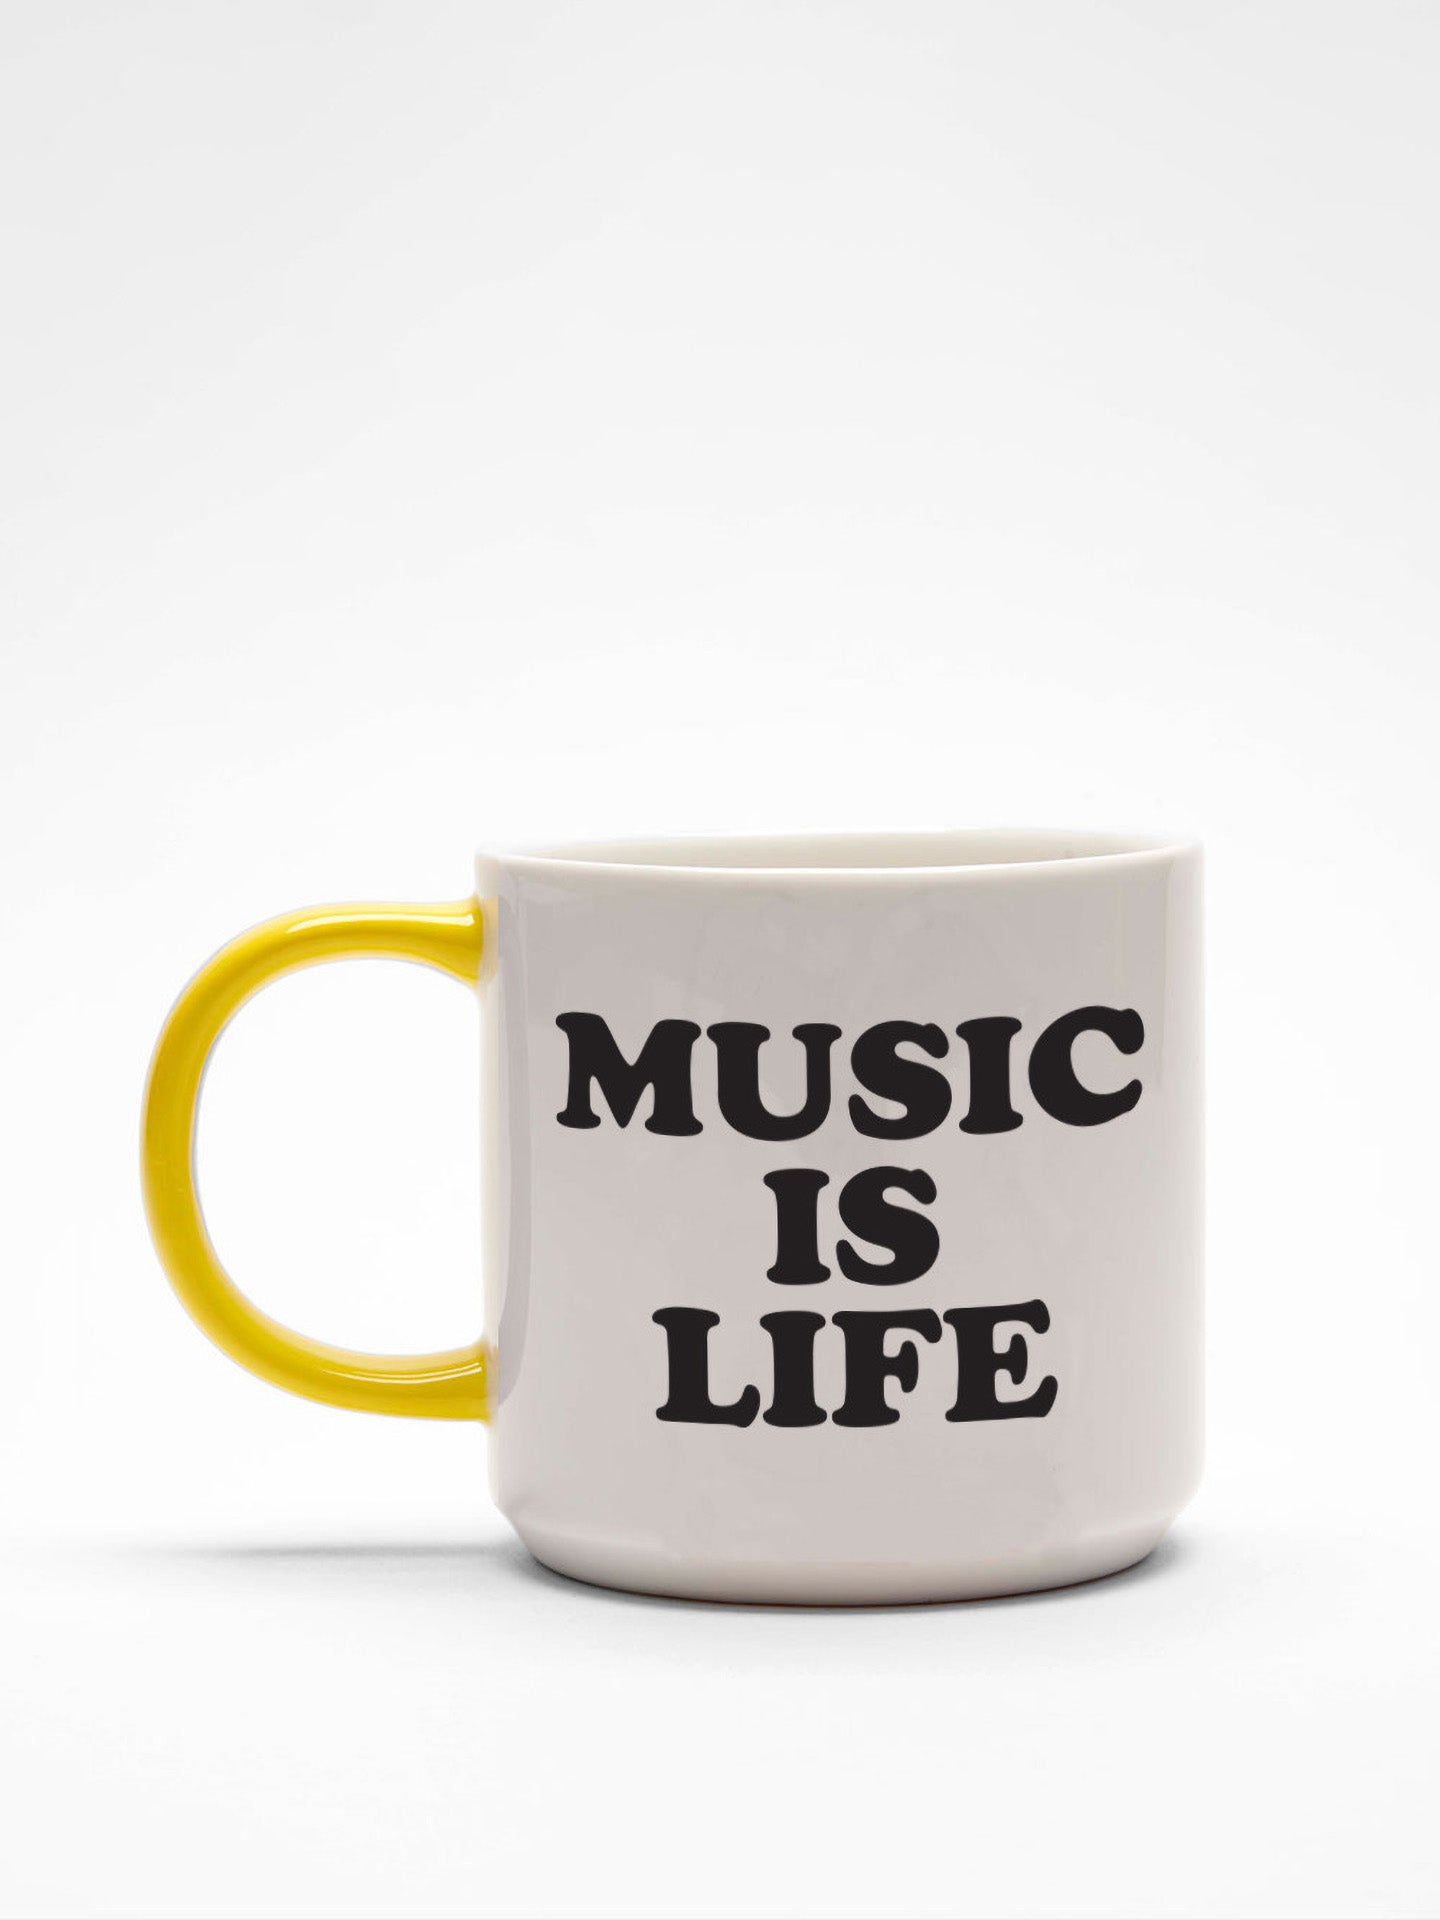 Peanuts Mug, Music is Life